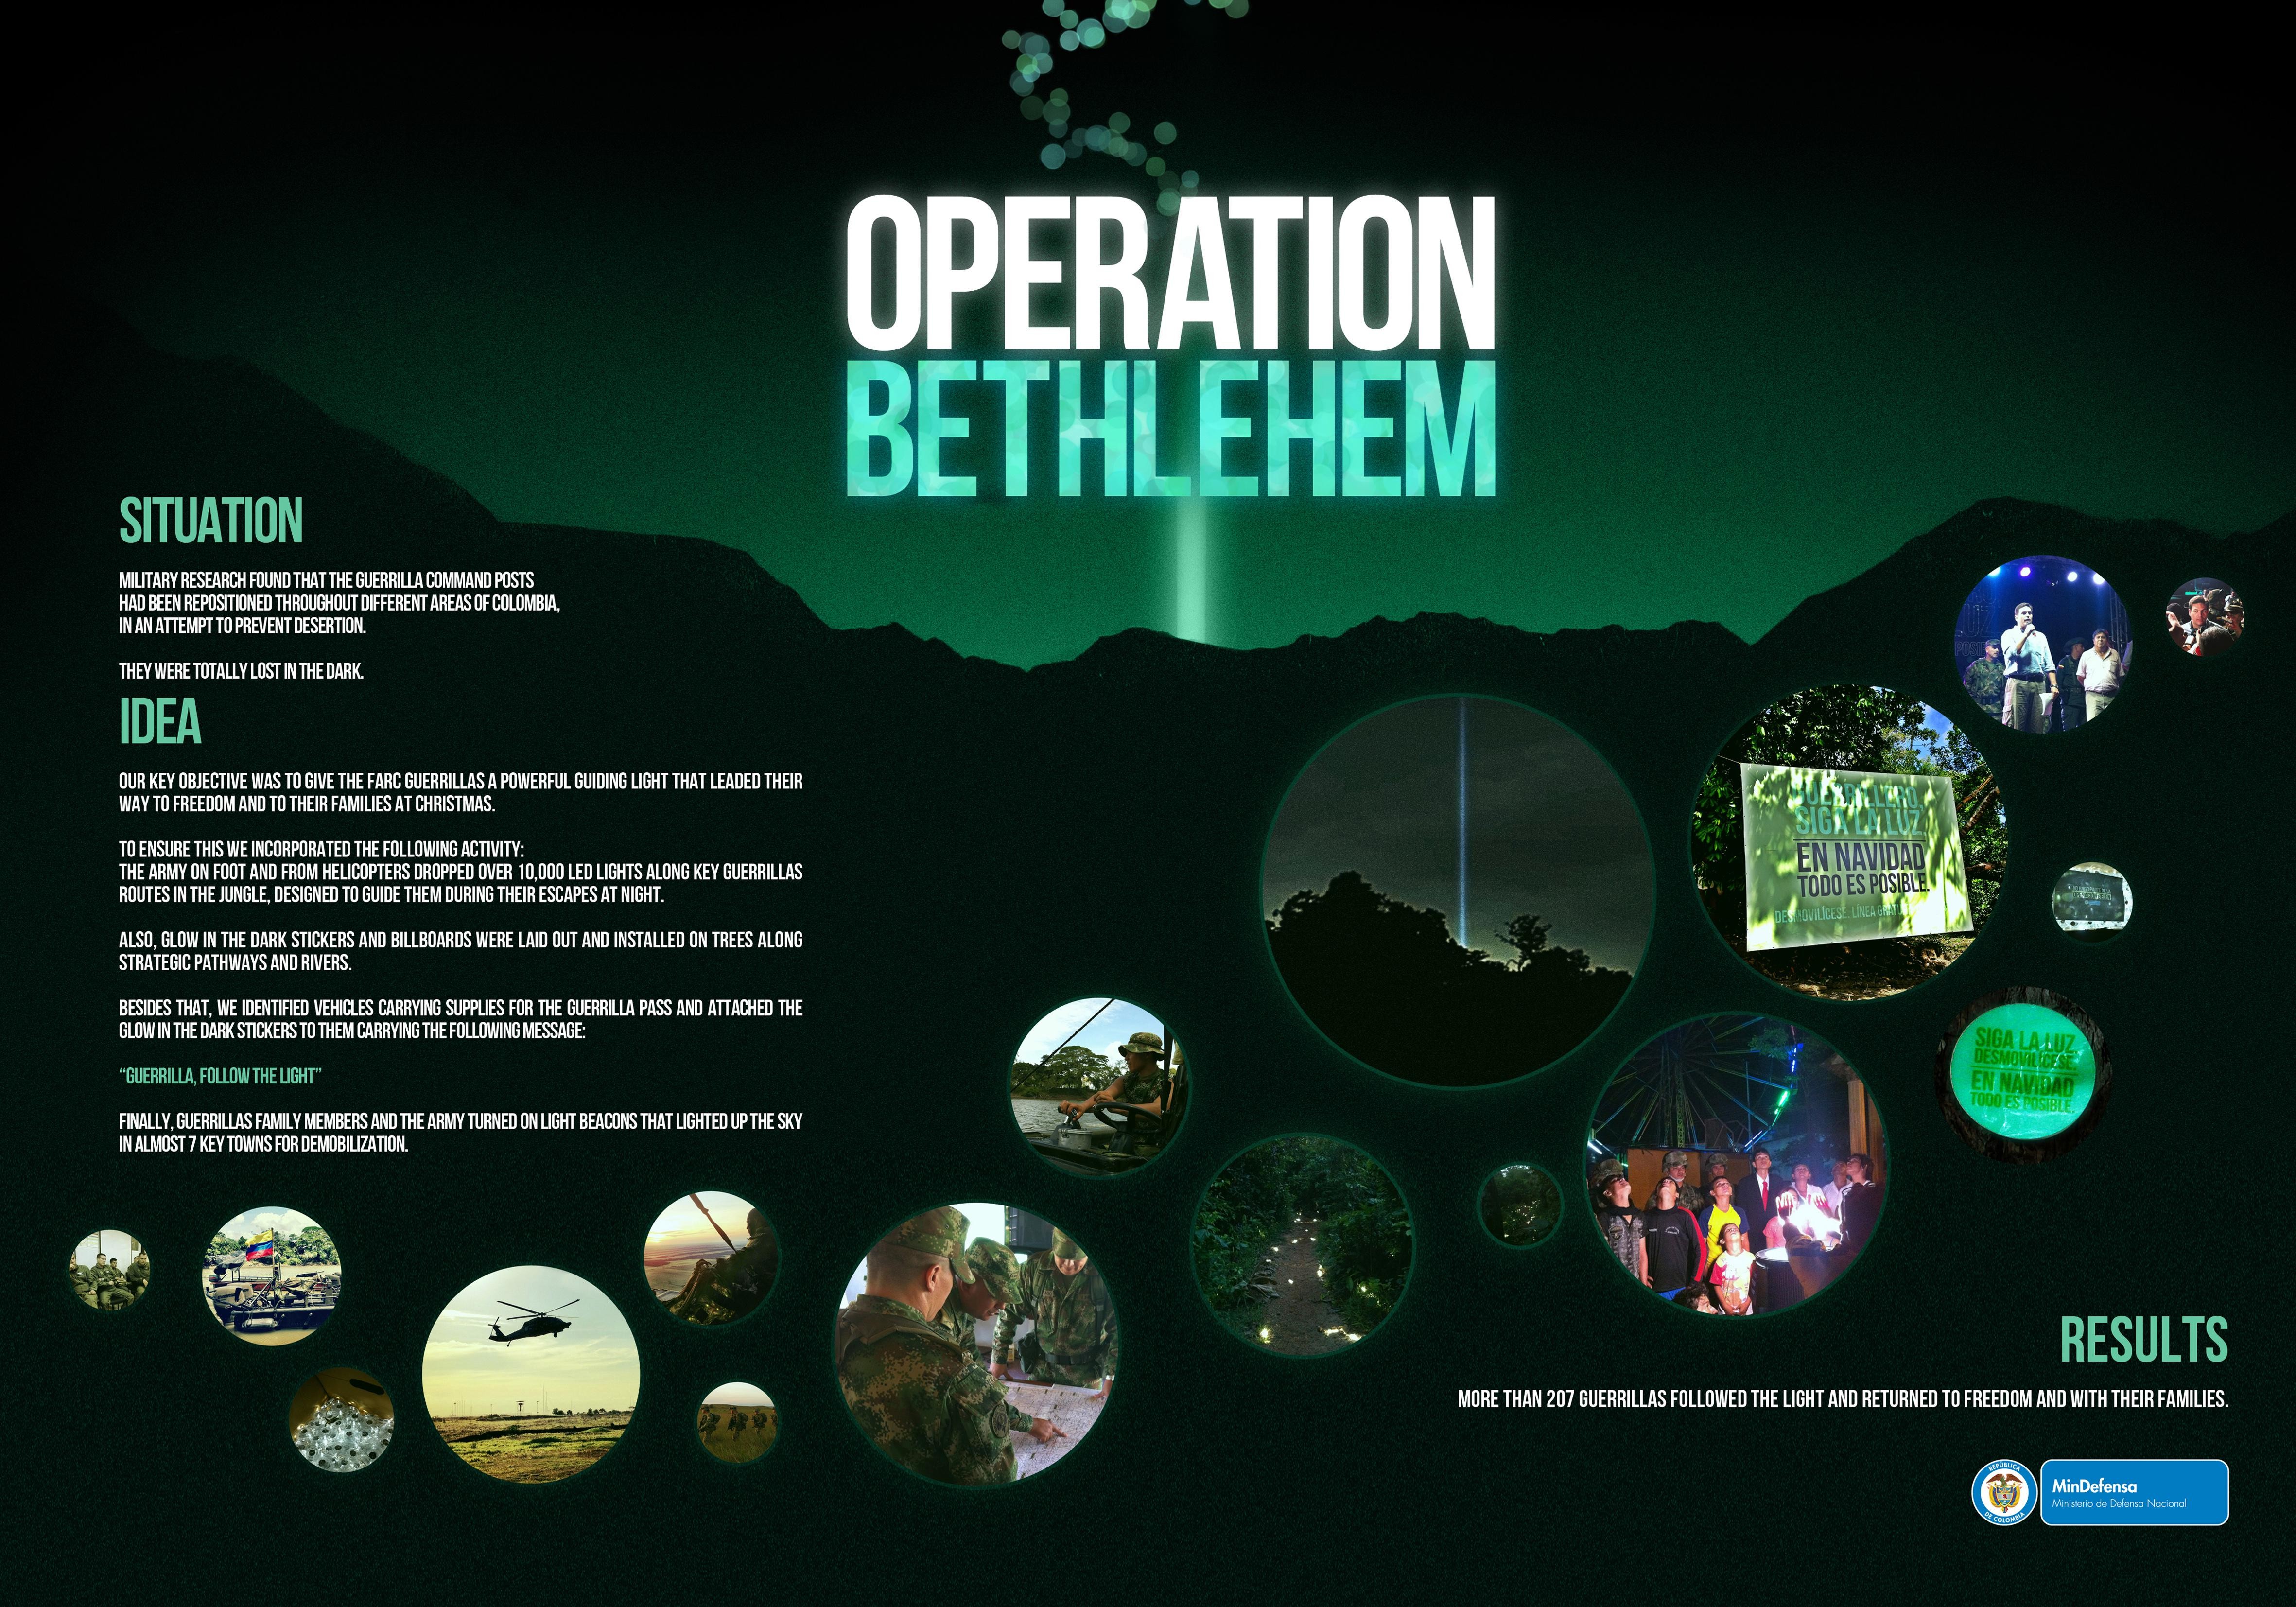 OPERATION BETHLEHEM